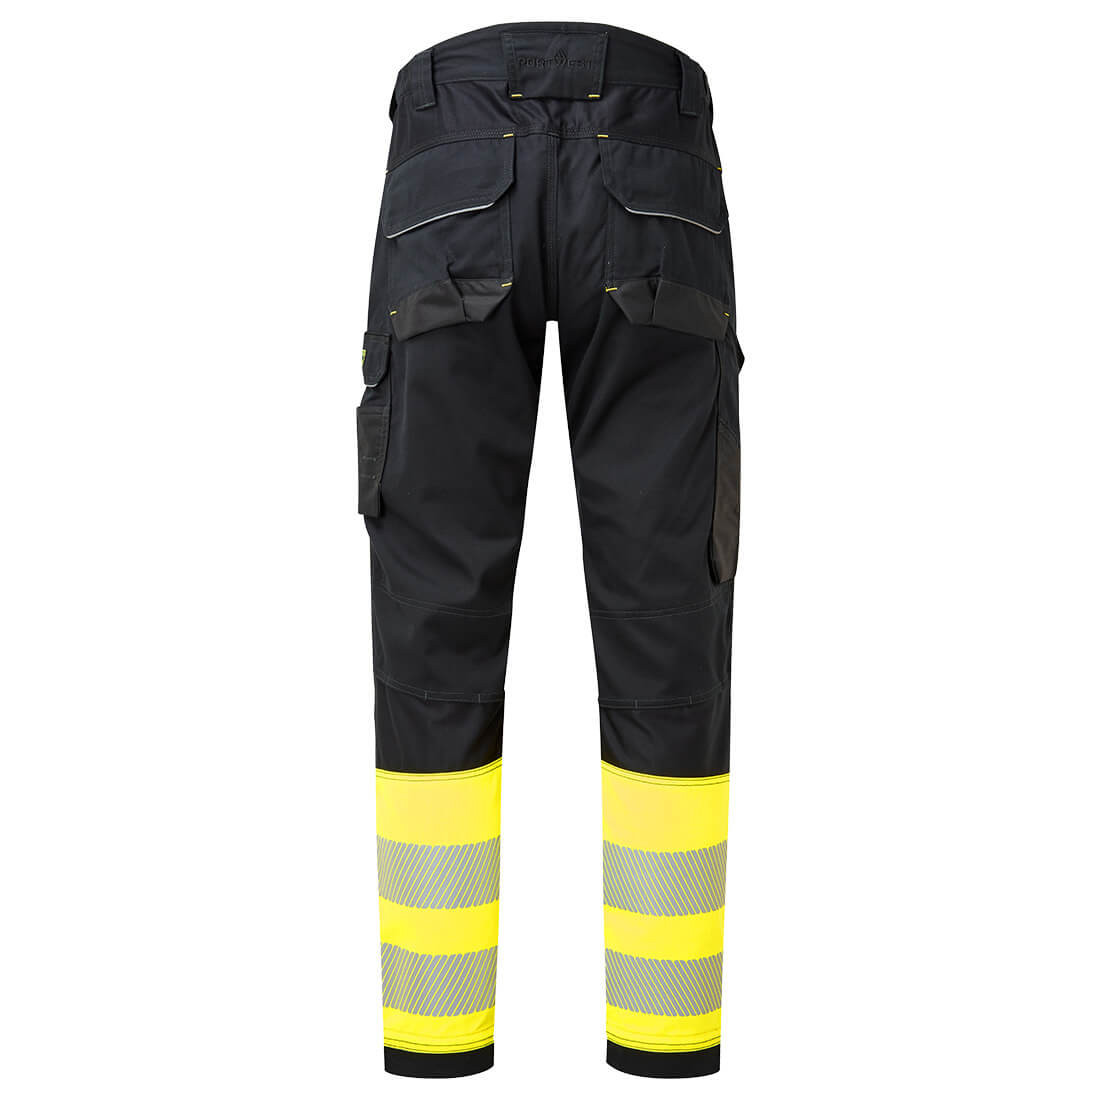 PW3 FR Warnschutz Bundhose mit Holstertaschen Klasse 1 - Arbeitskleidung